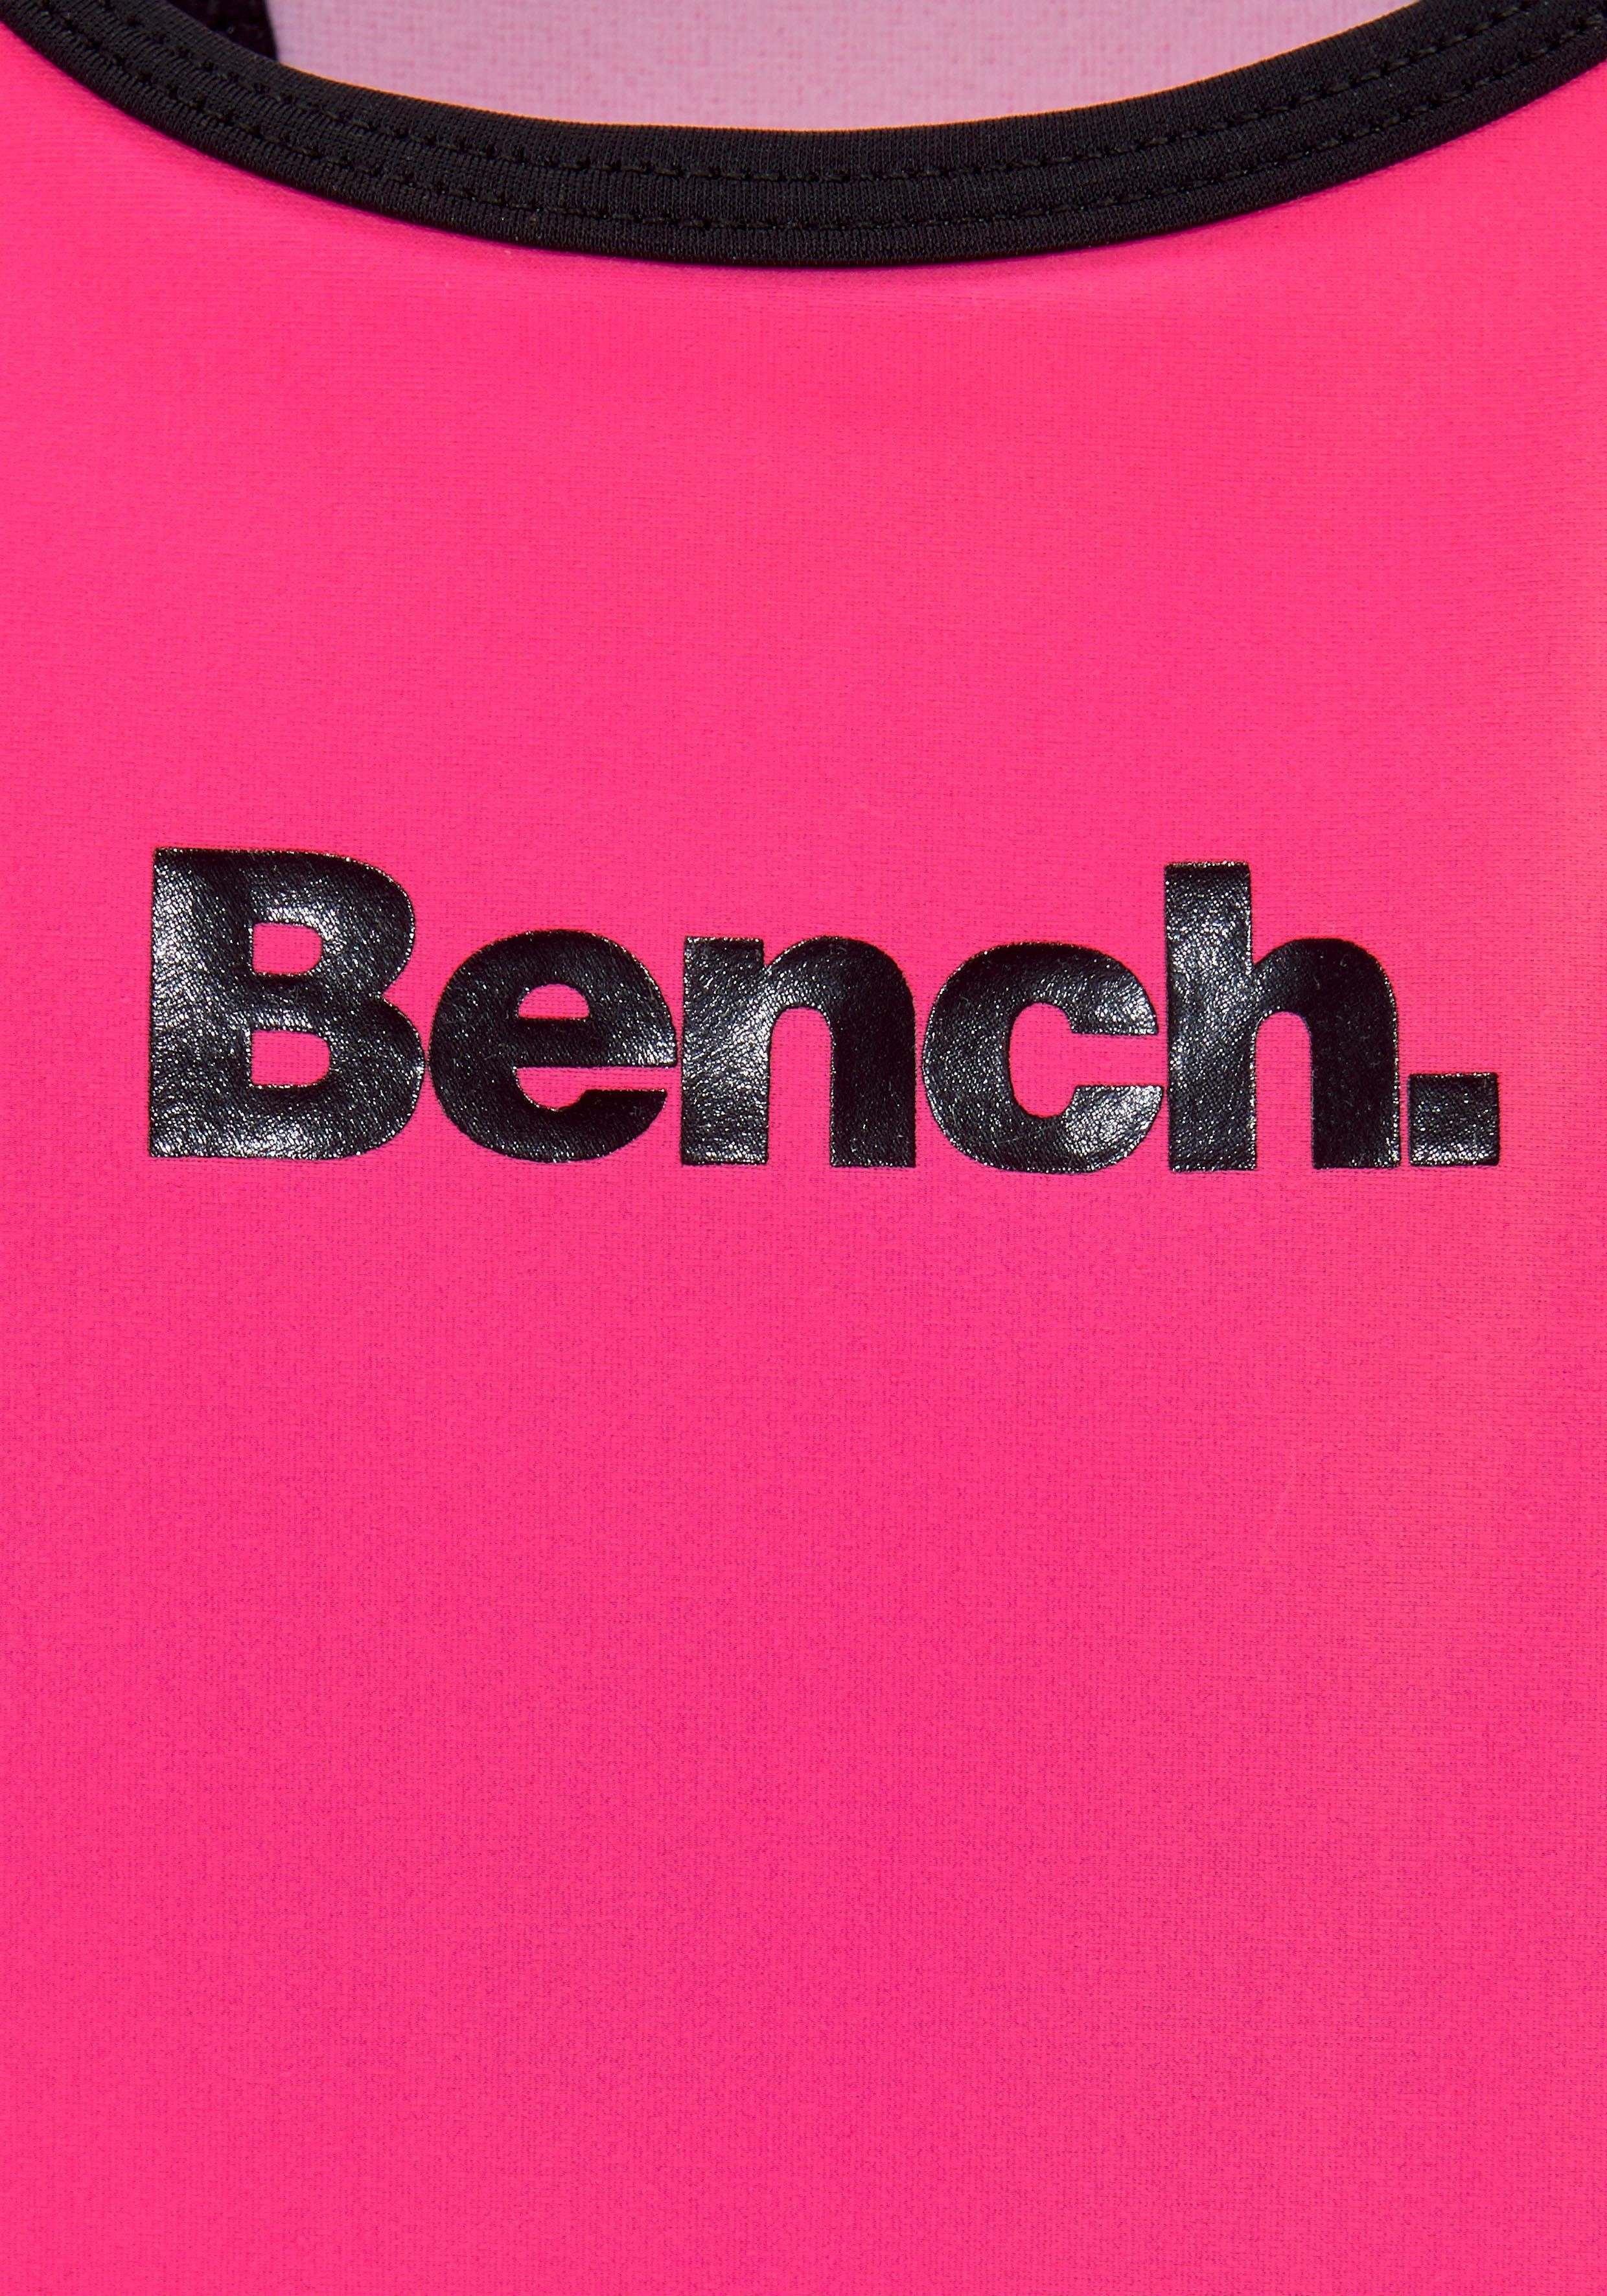 Bench. Badeanzug pink-schwarz Logoprint mit